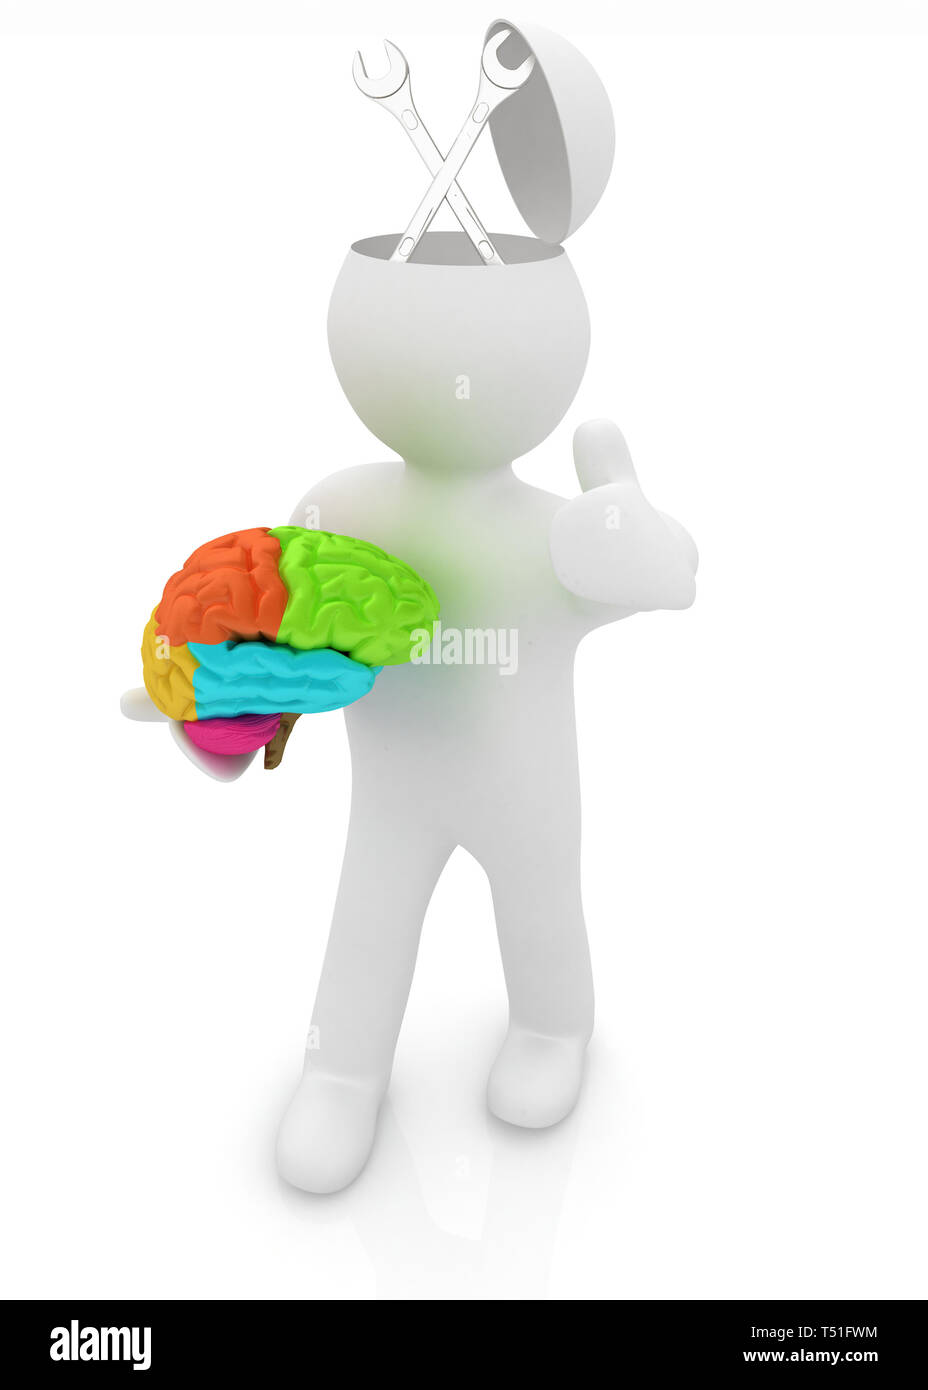 Les gens 3d - homme avec demi-tête, cerveau et trumb. Concept de service à l'aide d'une clé Banque D'Images